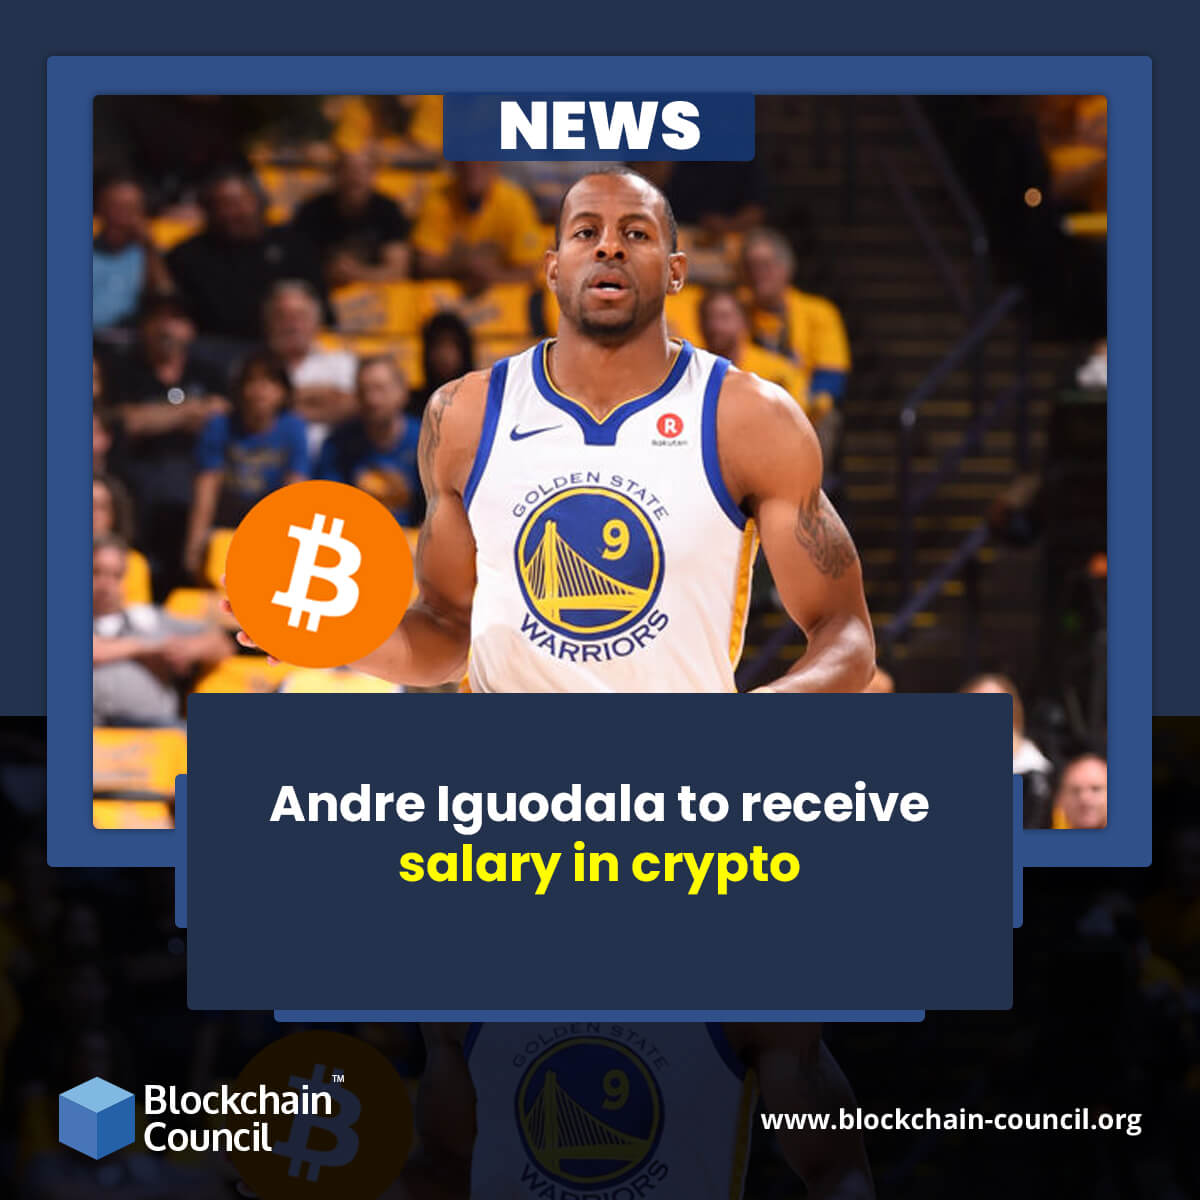 Andre Iguodala to receive salary in crypto